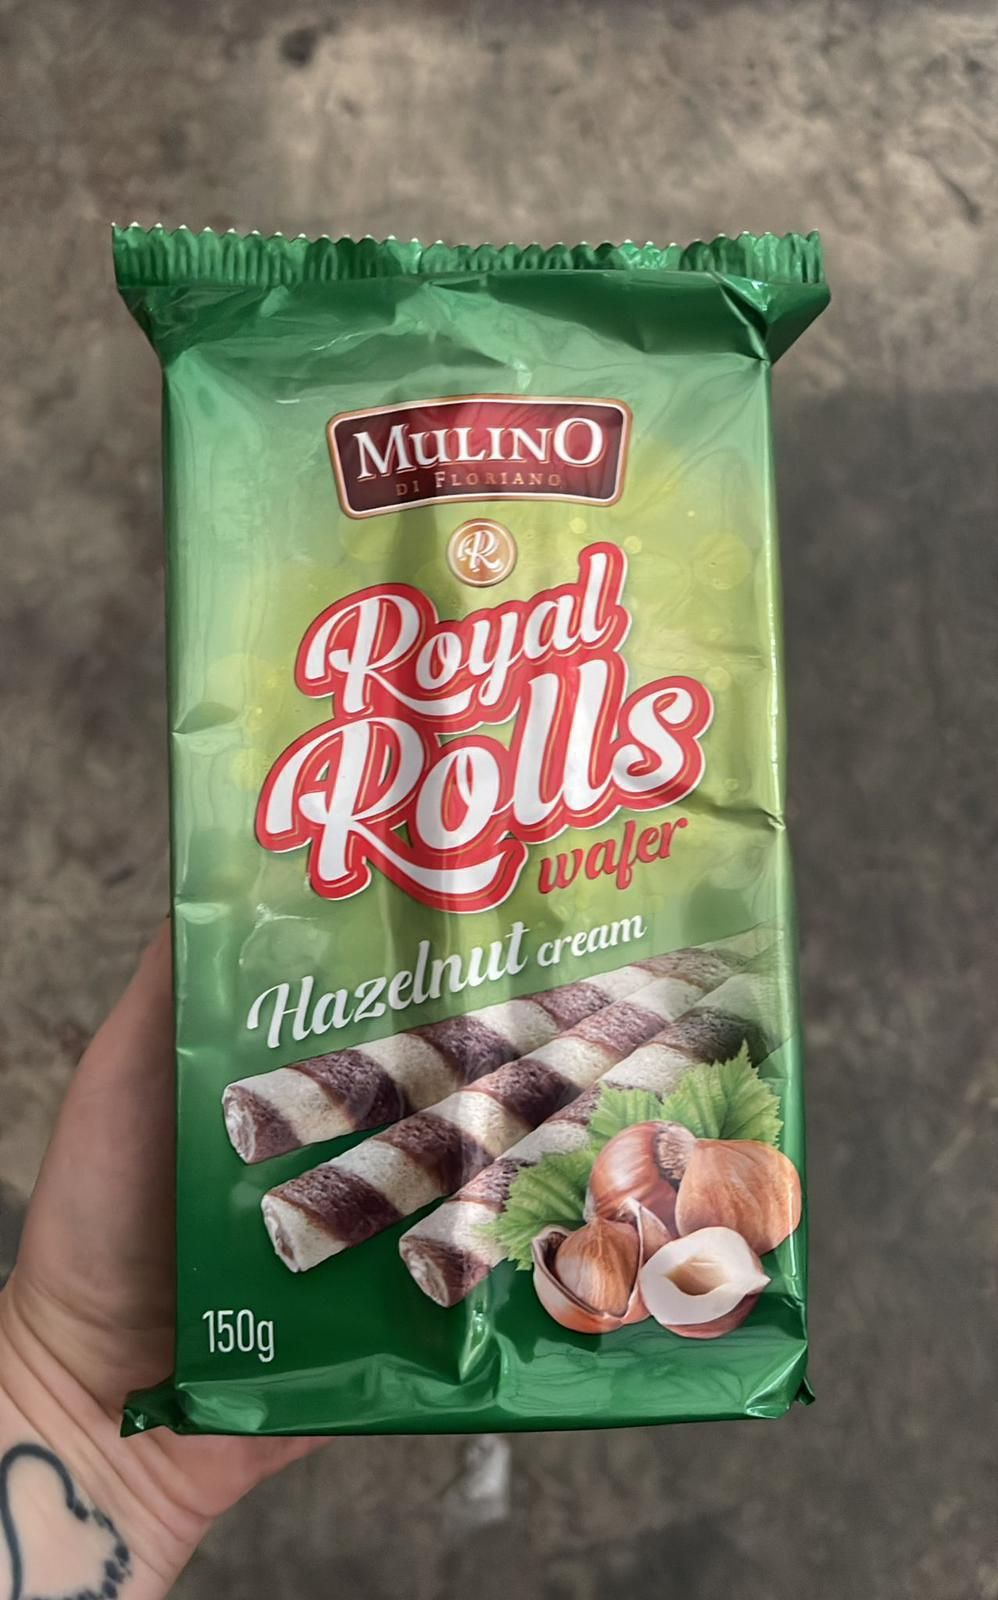 Mullino wafer rolls hazelnut 8x150g BBE 28/09/24 